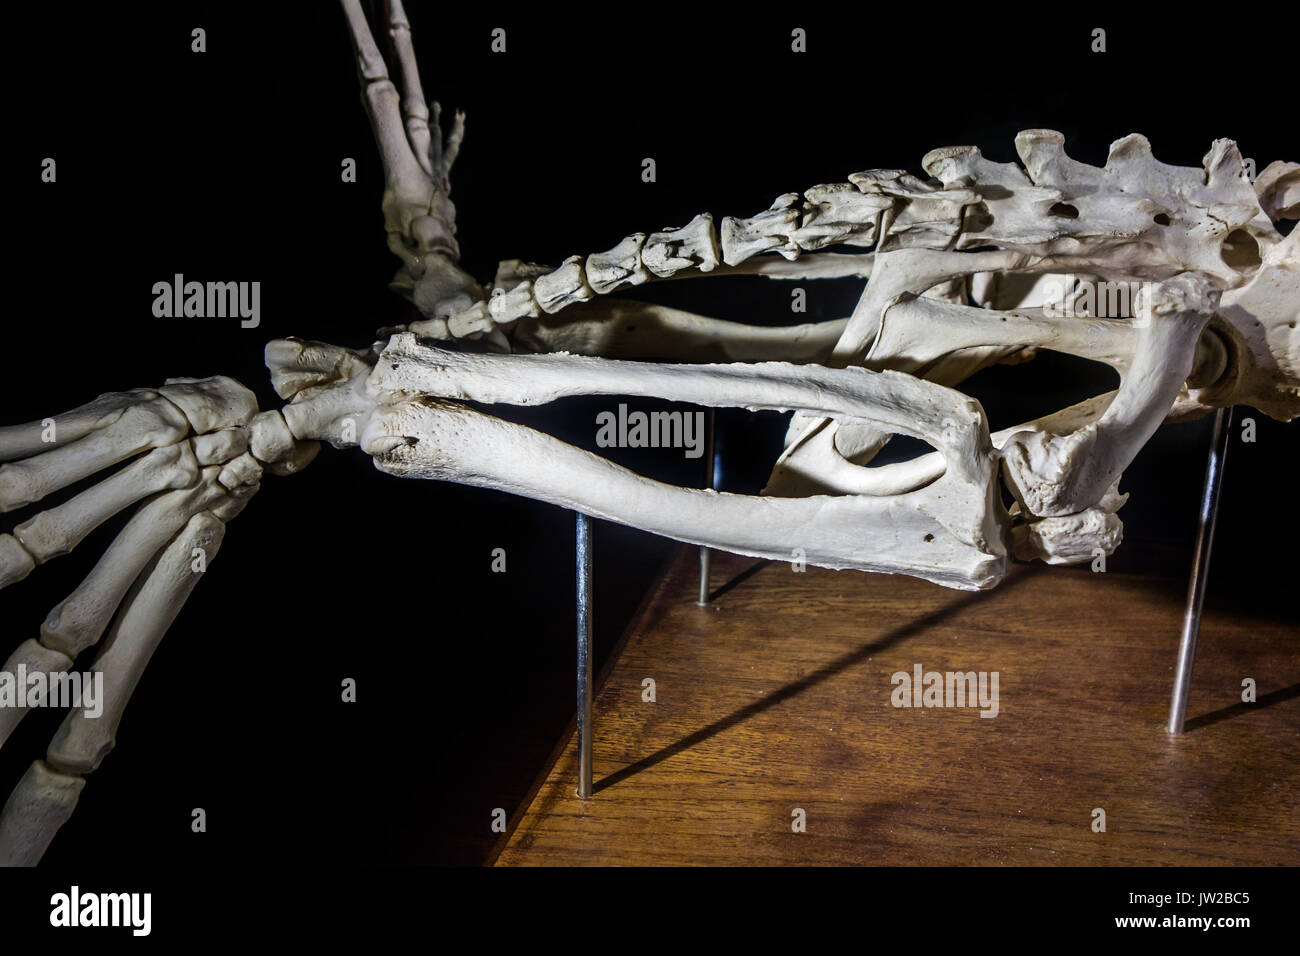 Détail de phoque commun / phoque / phoque commun (Phoca vitulina) Squelette montrant phalanges, tibia, fémur et l'os du péroné dans hind limb Banque D'Images